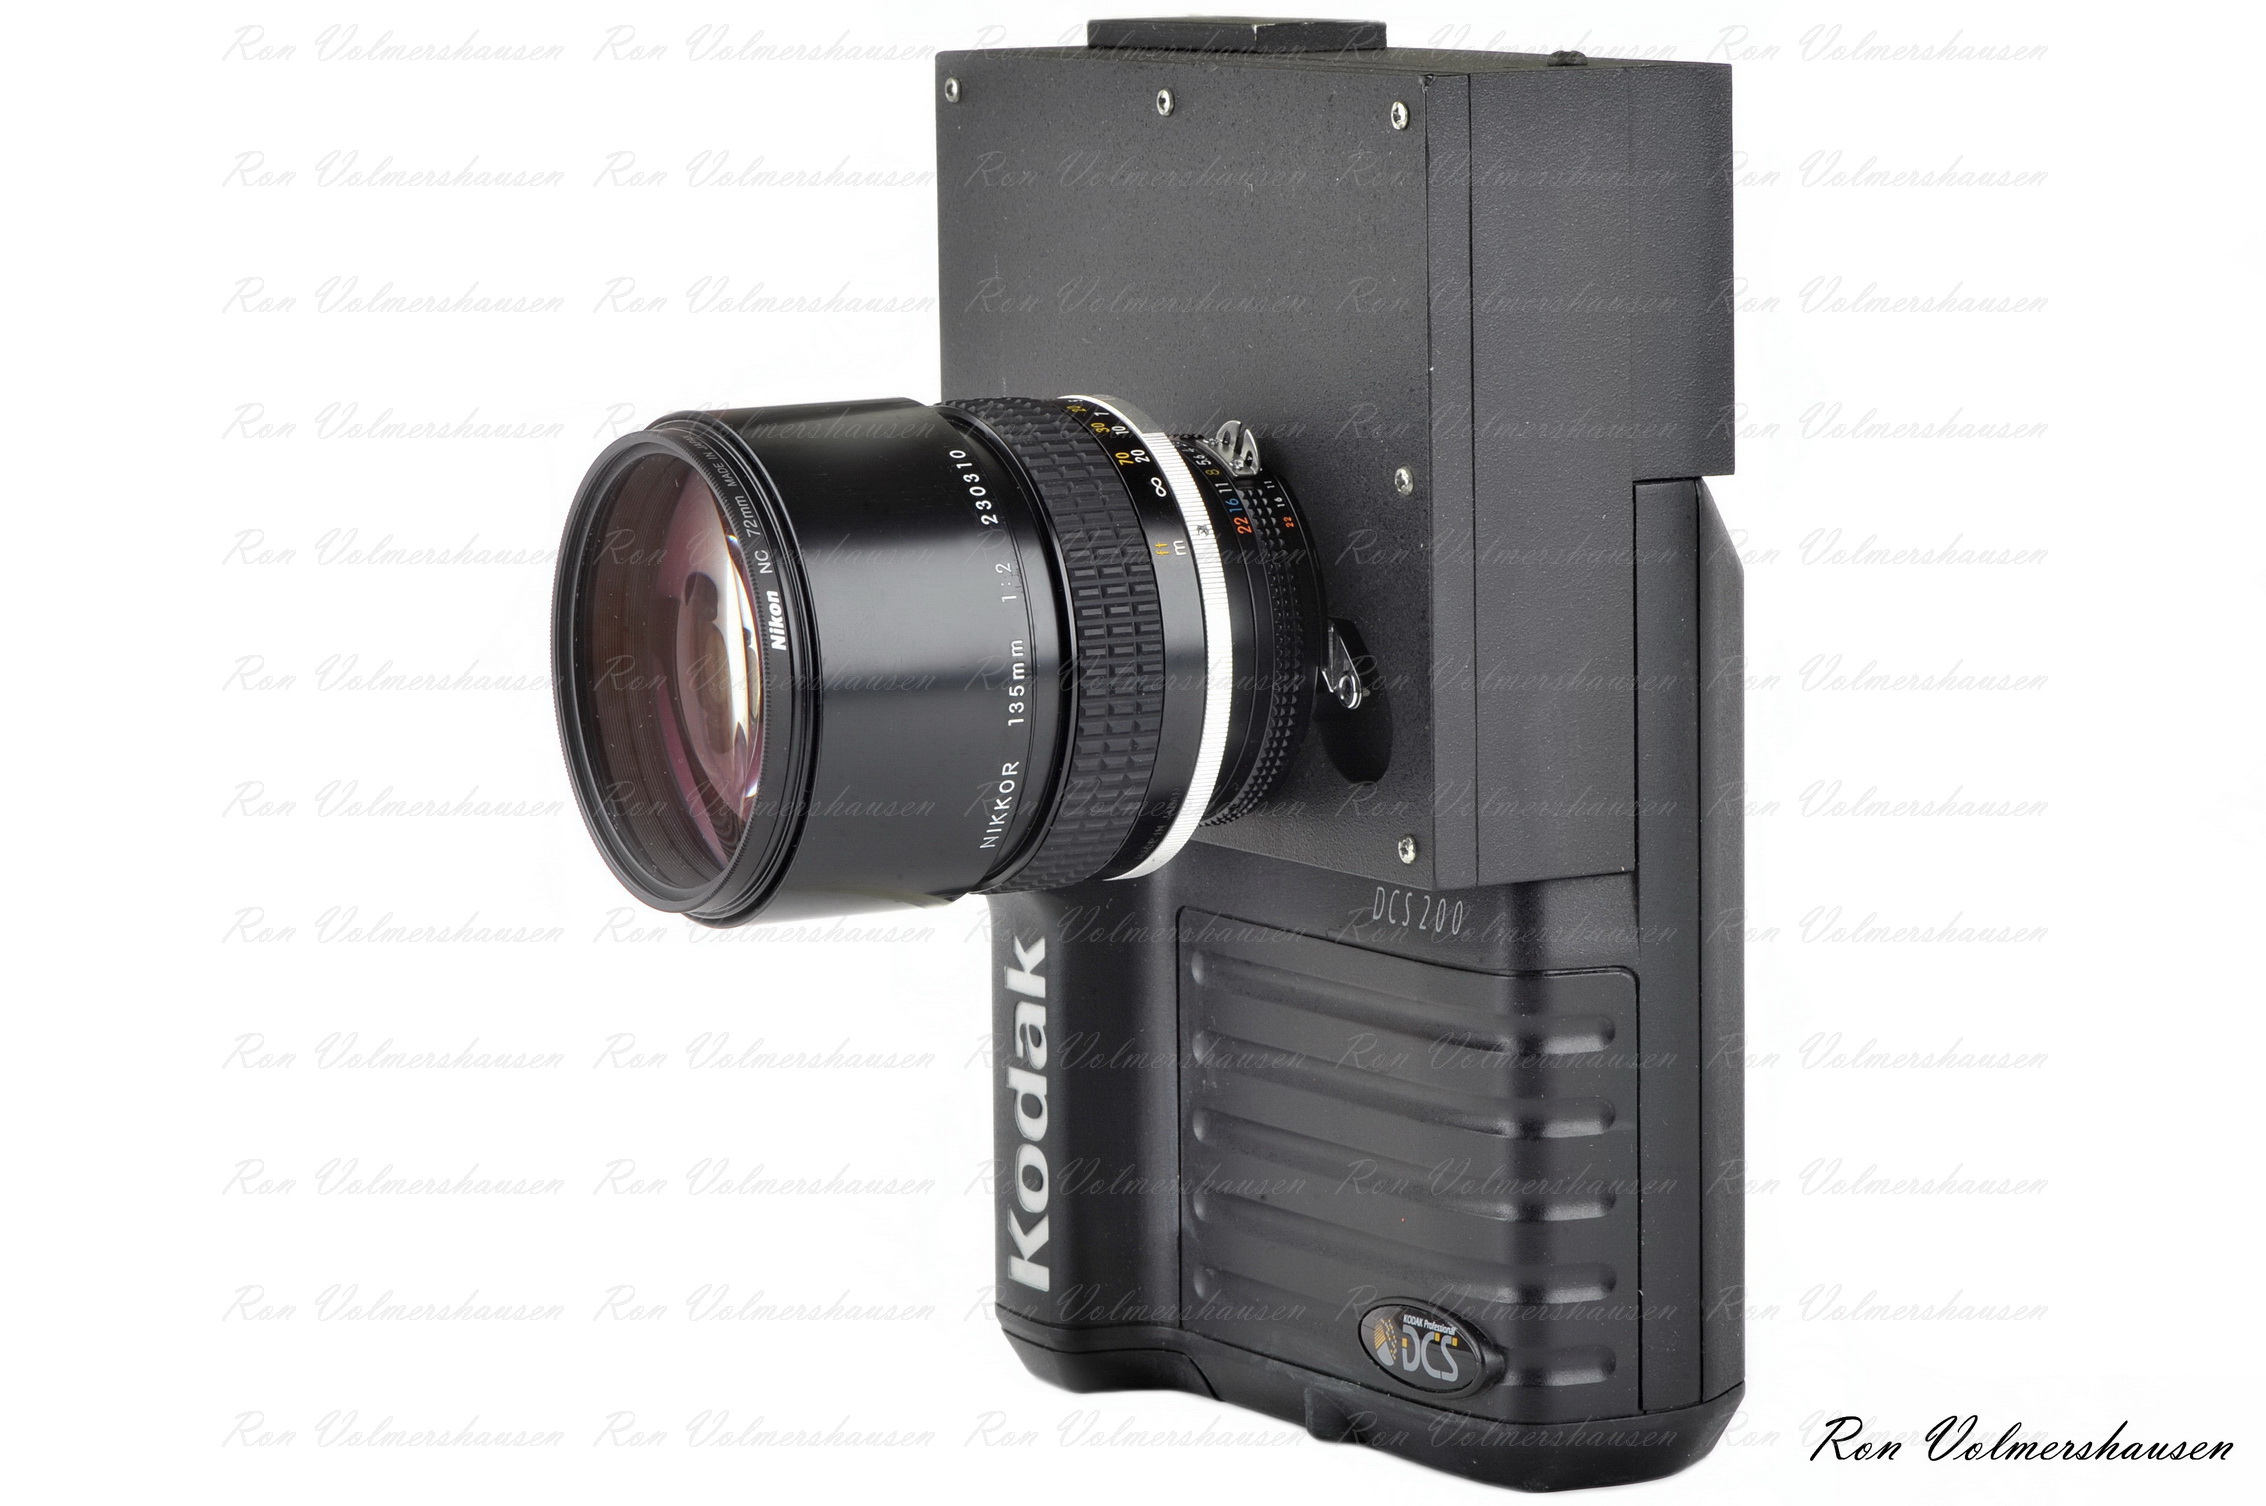 Kodak first DMILC (digital mirrorless interchangeable lens camera